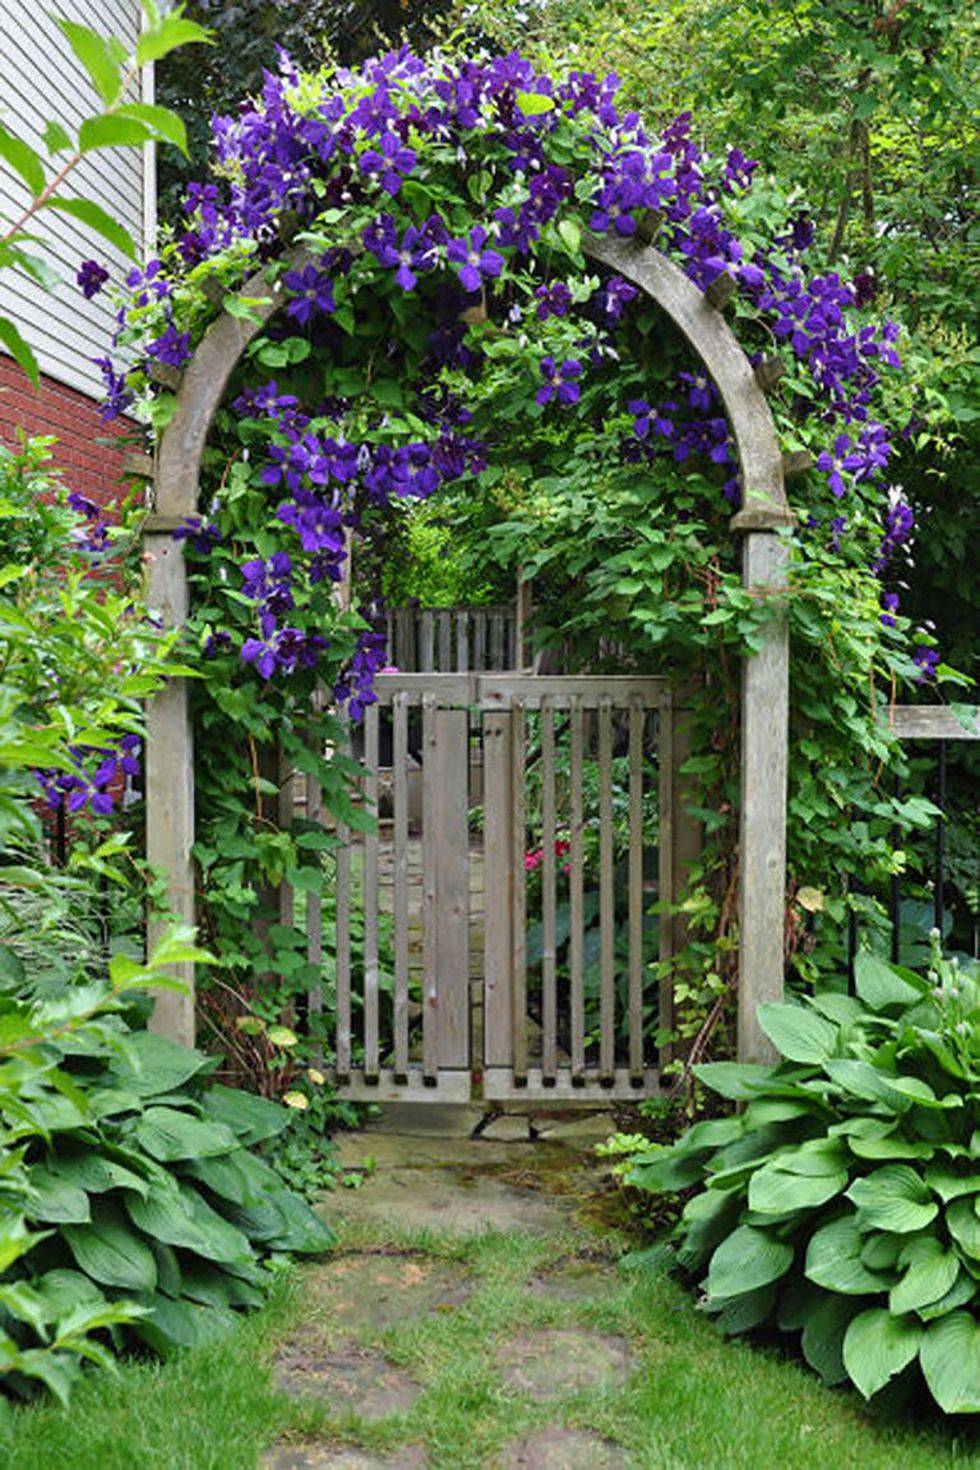 purple flower covered arch garden gate